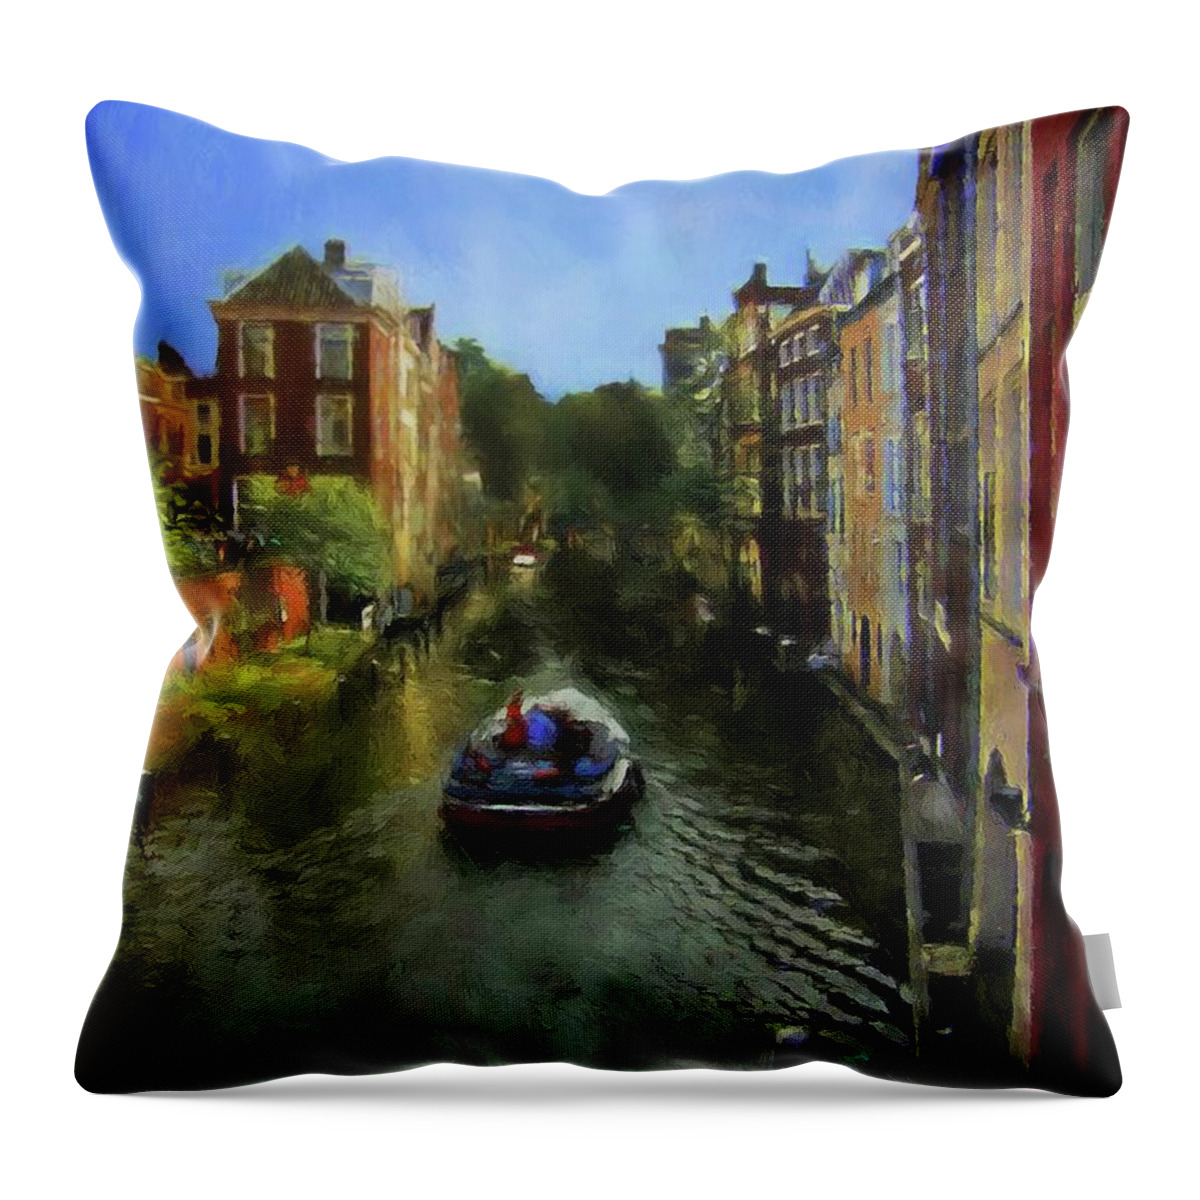 John+kolenberg Throw Pillow featuring the photograph Utrecht, Holland by John Kolenberg